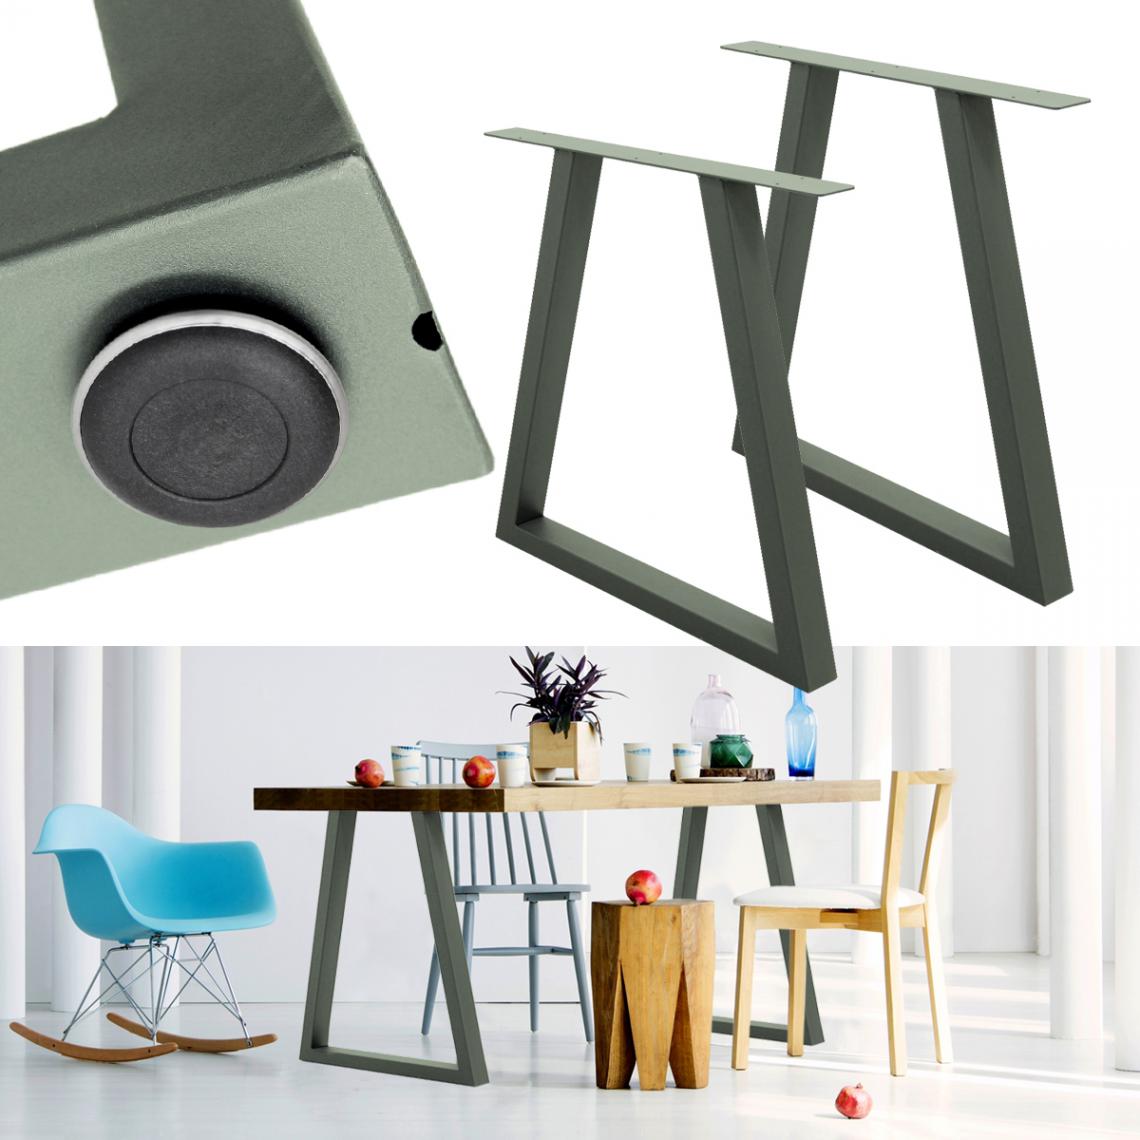 Ecd Germany - 2x Pieds de table en acier gris pierre 60x72 cm support trapéze style industriel - Pieds & roulettes pour meuble